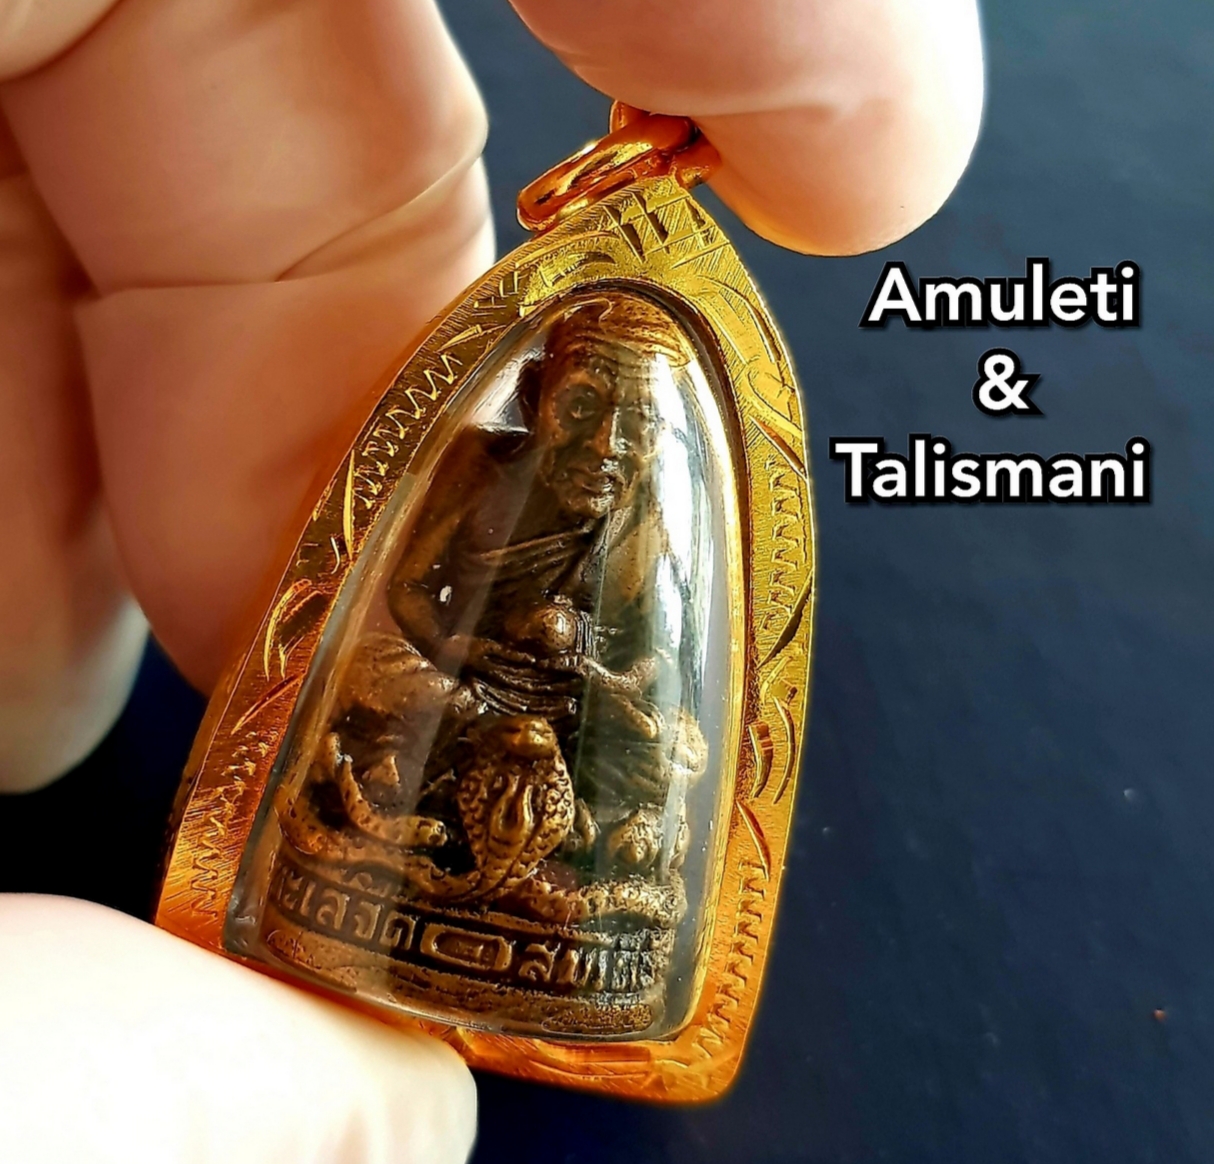 amuleto thailandese lp thuad